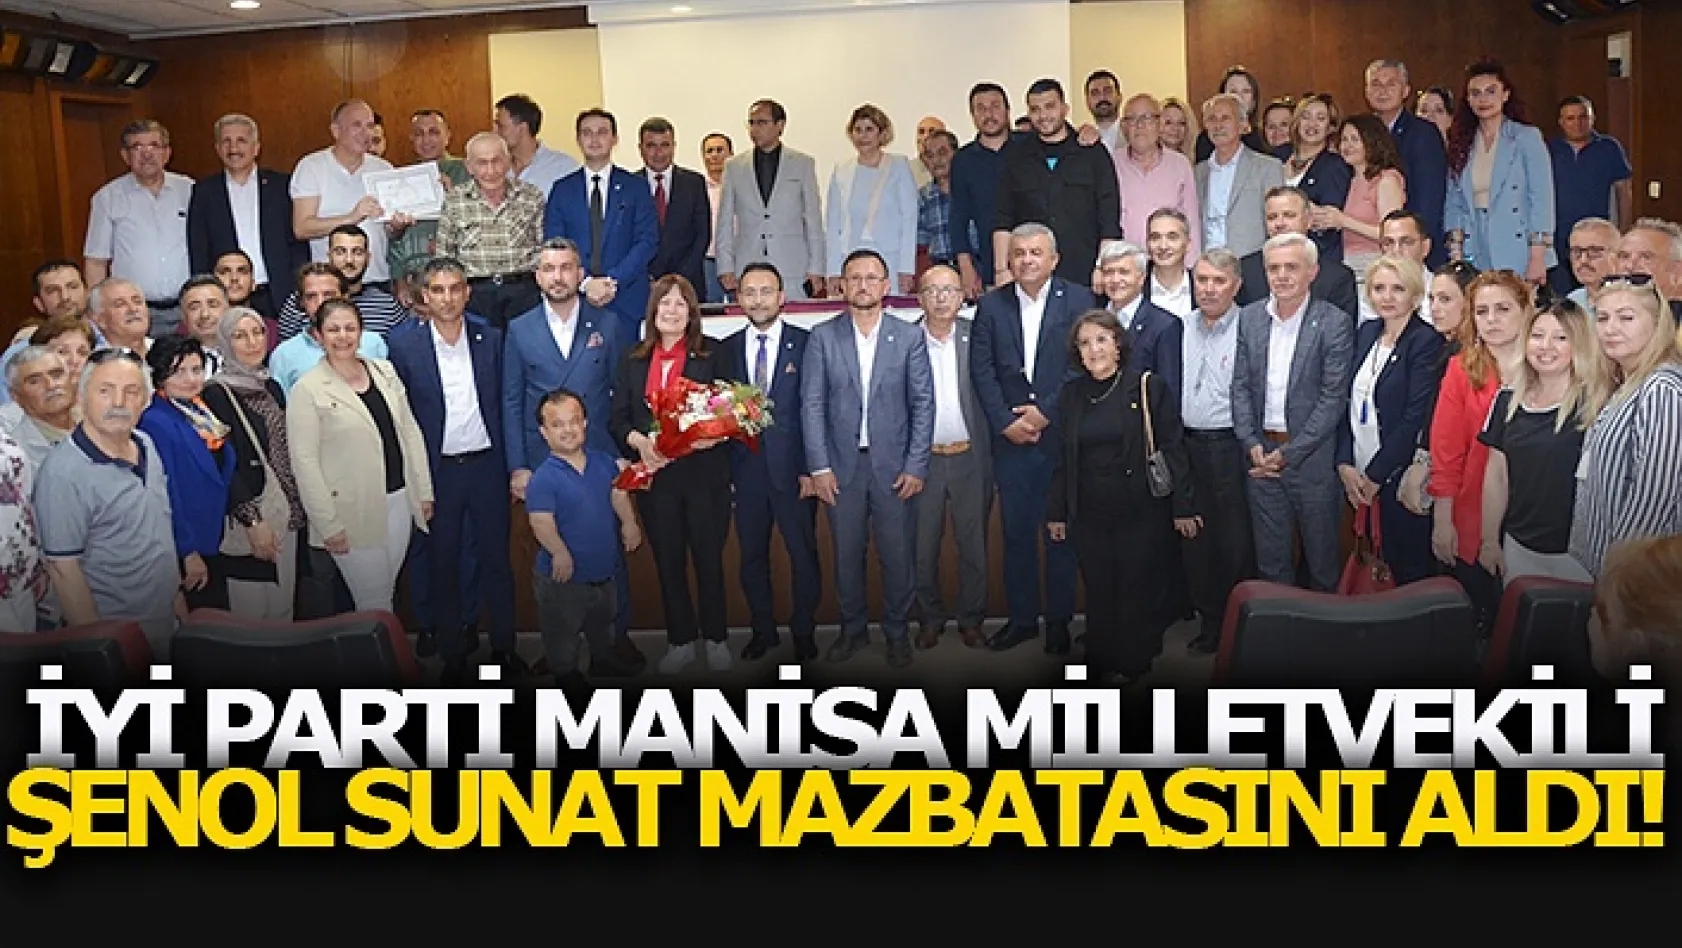 İyi Parti Manisa Milletvekili Şenol Sunat Mazbatasını Aldı!